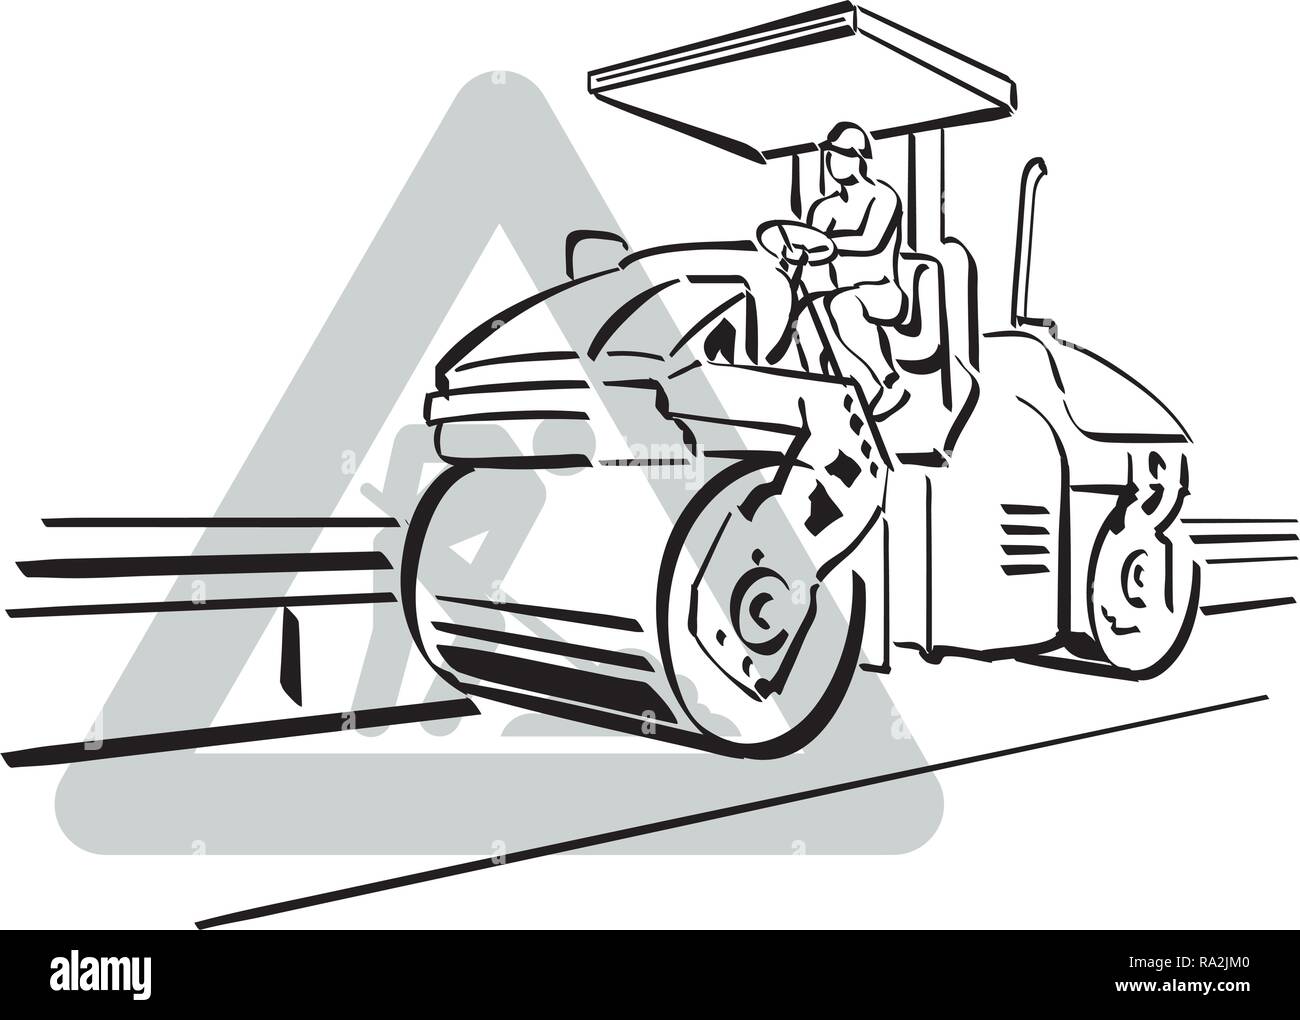 Illustrazione del lavoratore la guida rullo di vapore, sfondo bianco. Illustrazione Vettoriale